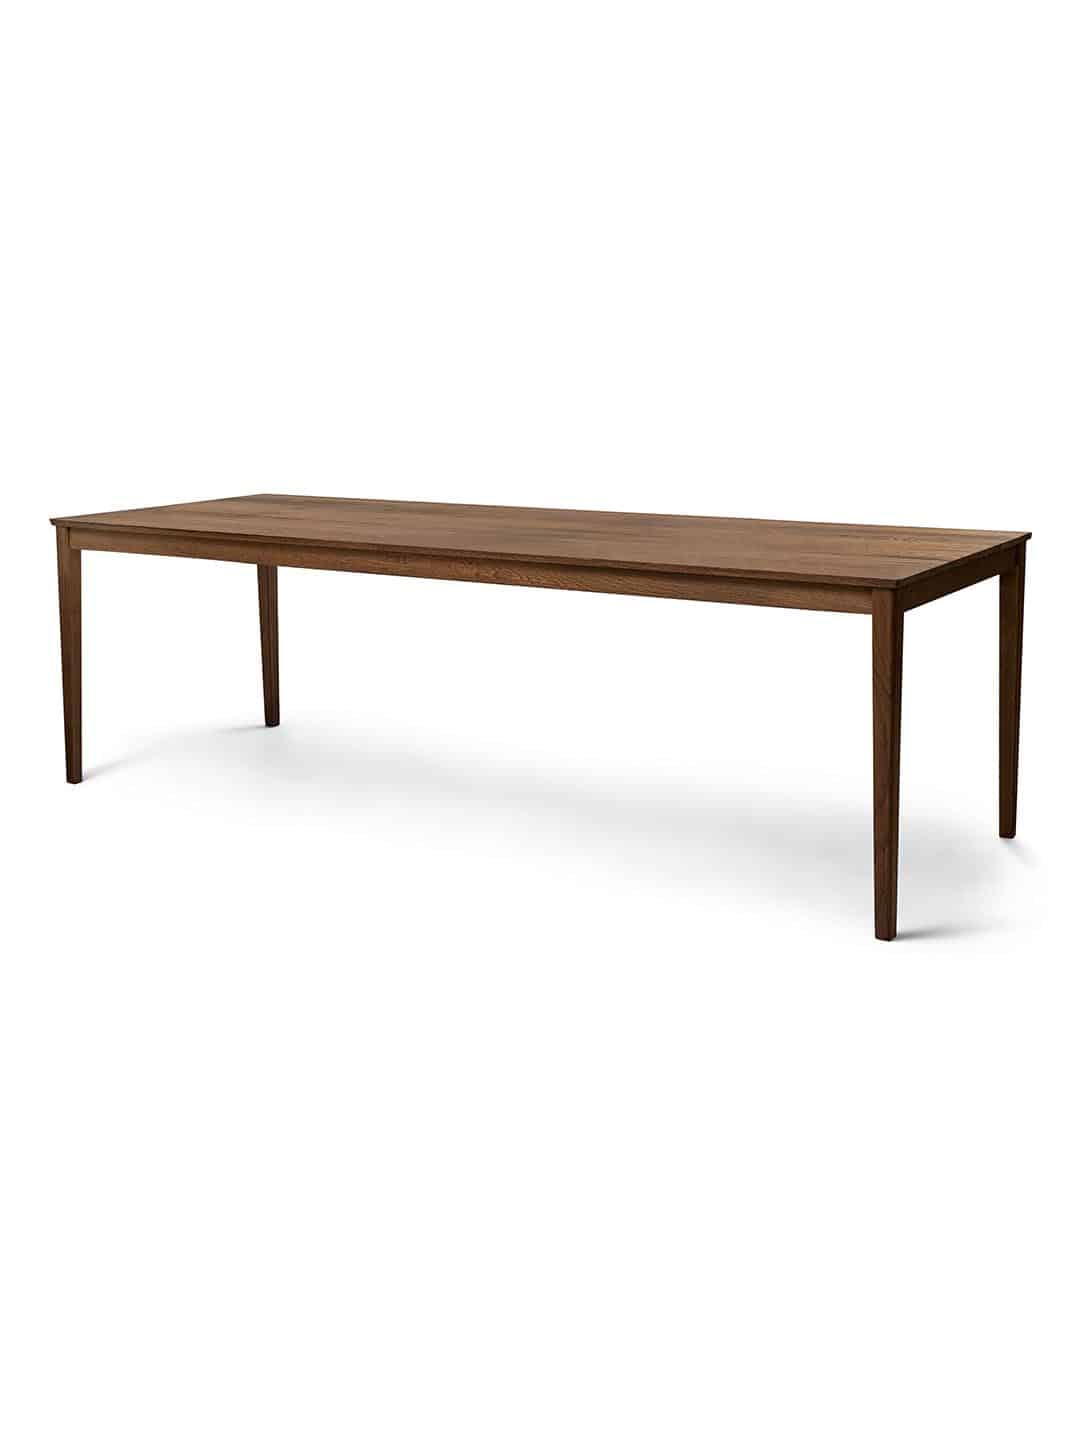 Обеденный стол Sibast №2 из массива древесины, покрытой темным маслом, на белом фоне